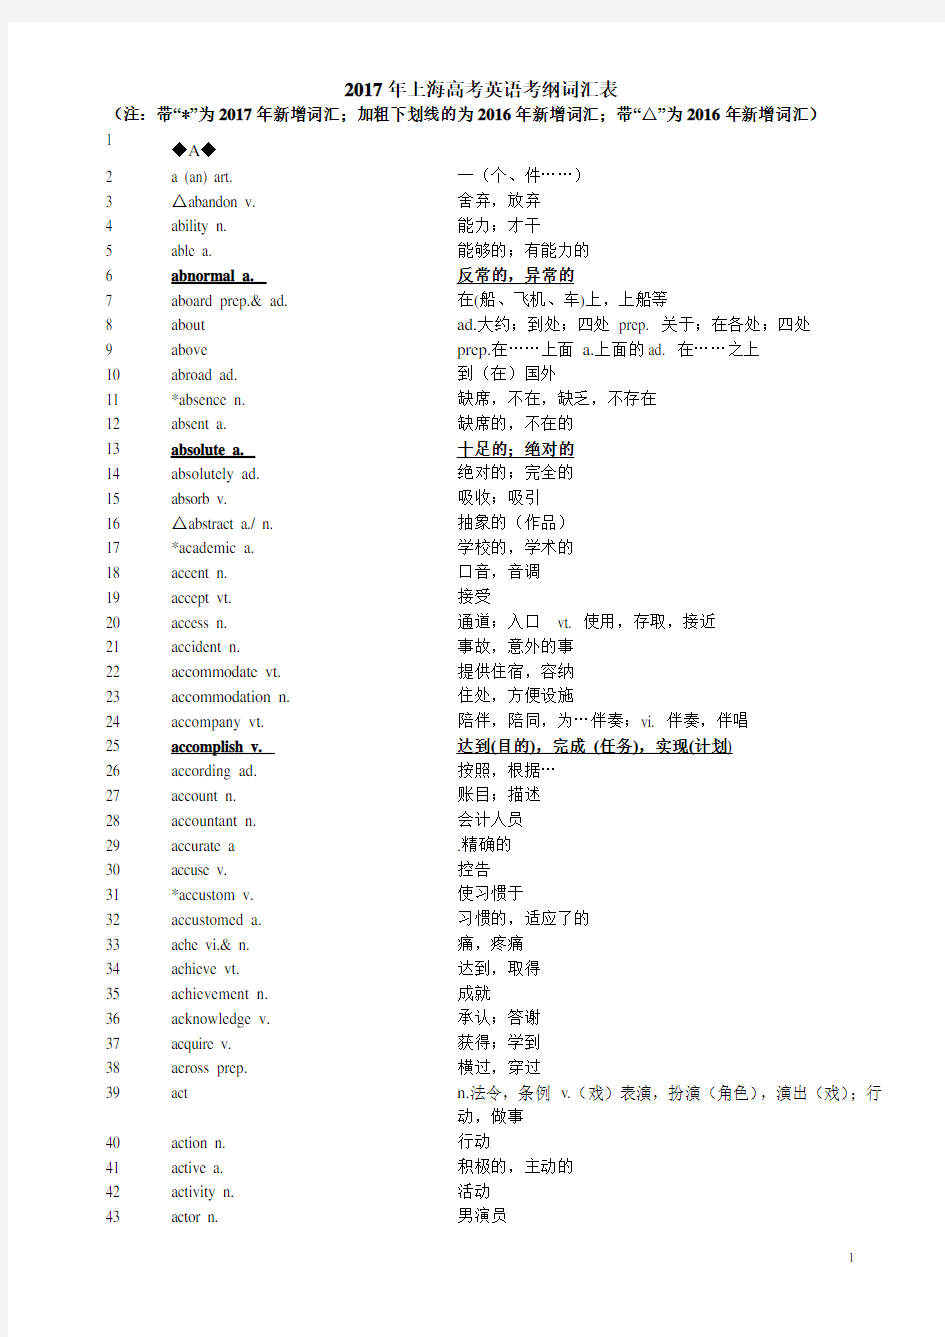 2018年上海高考英语考纲词汇表完整版